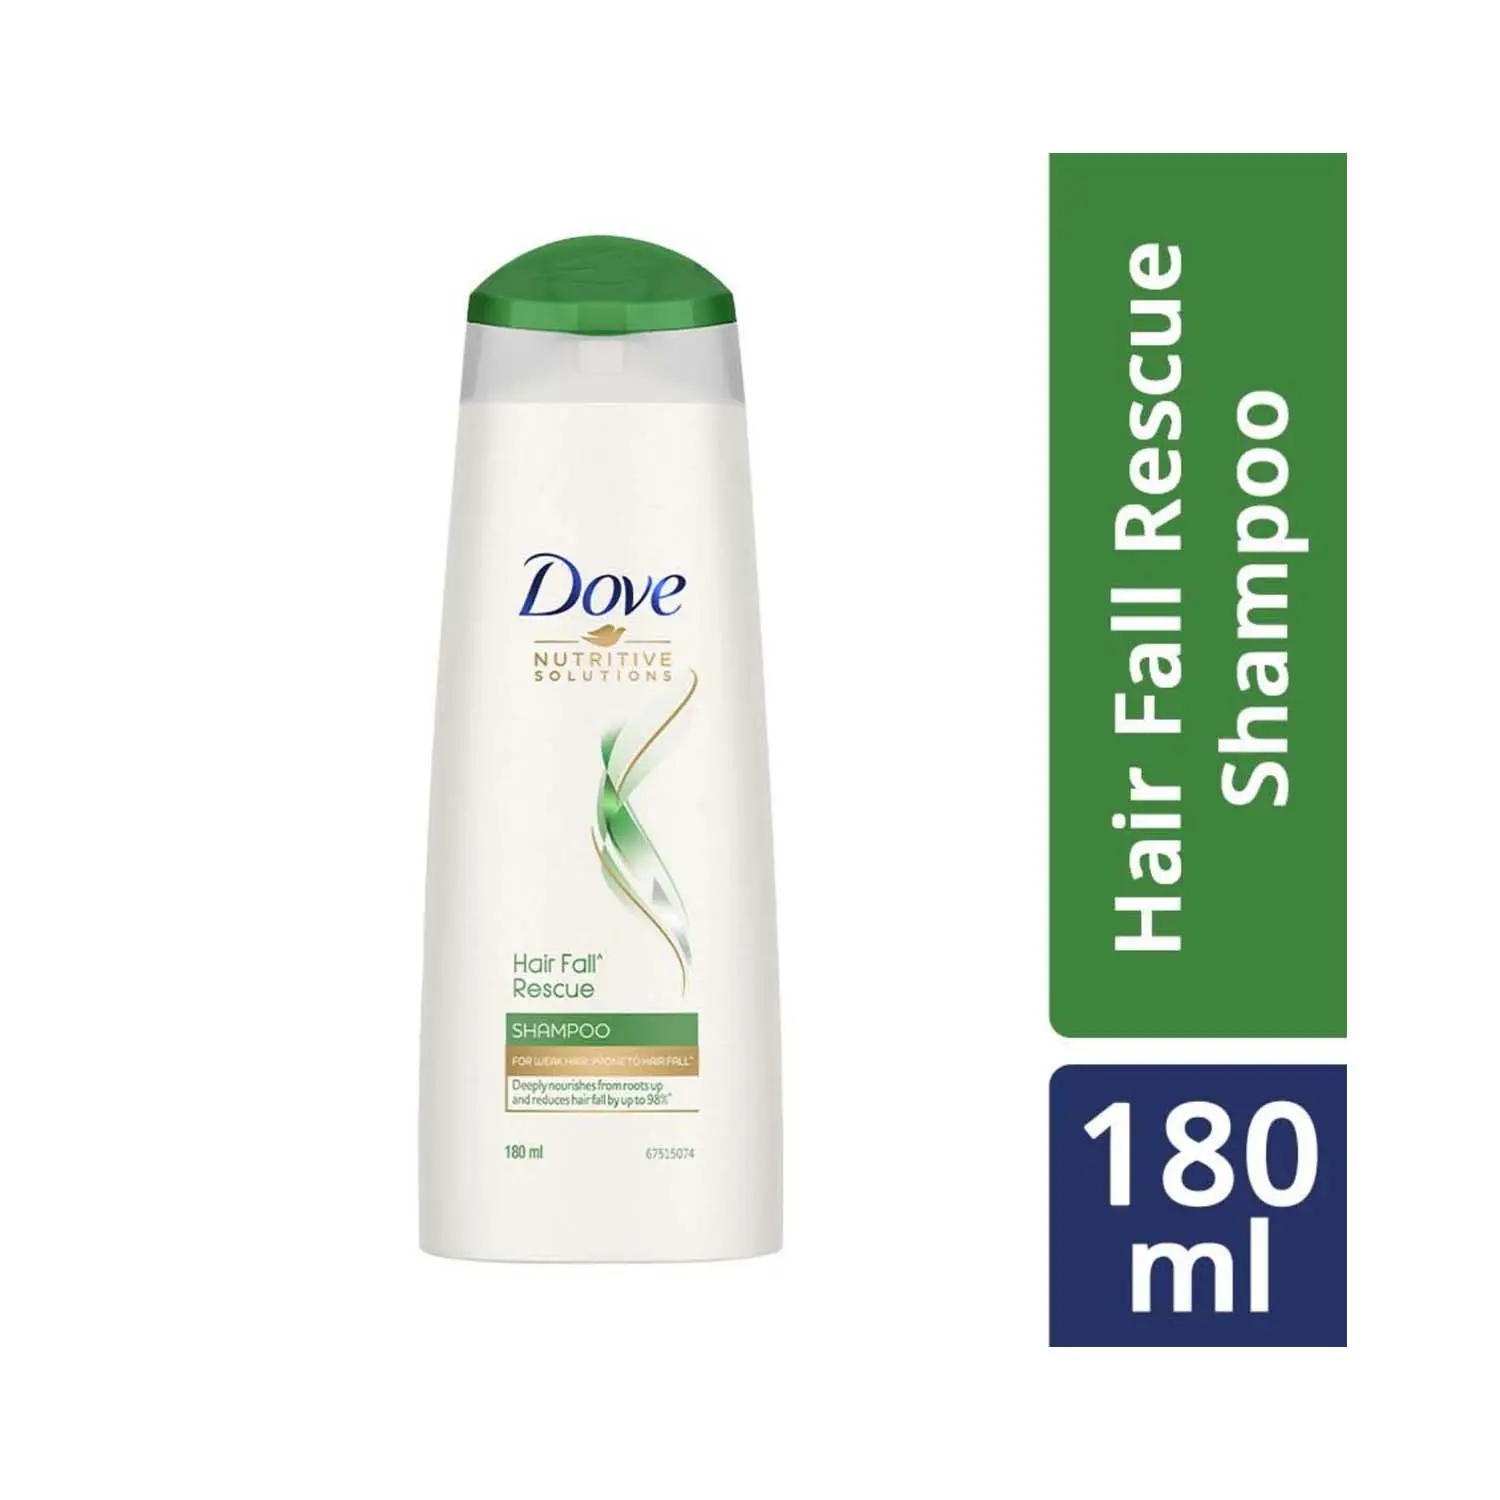 Dove Hair Fall Rescue Hair Shampoo (180ml)